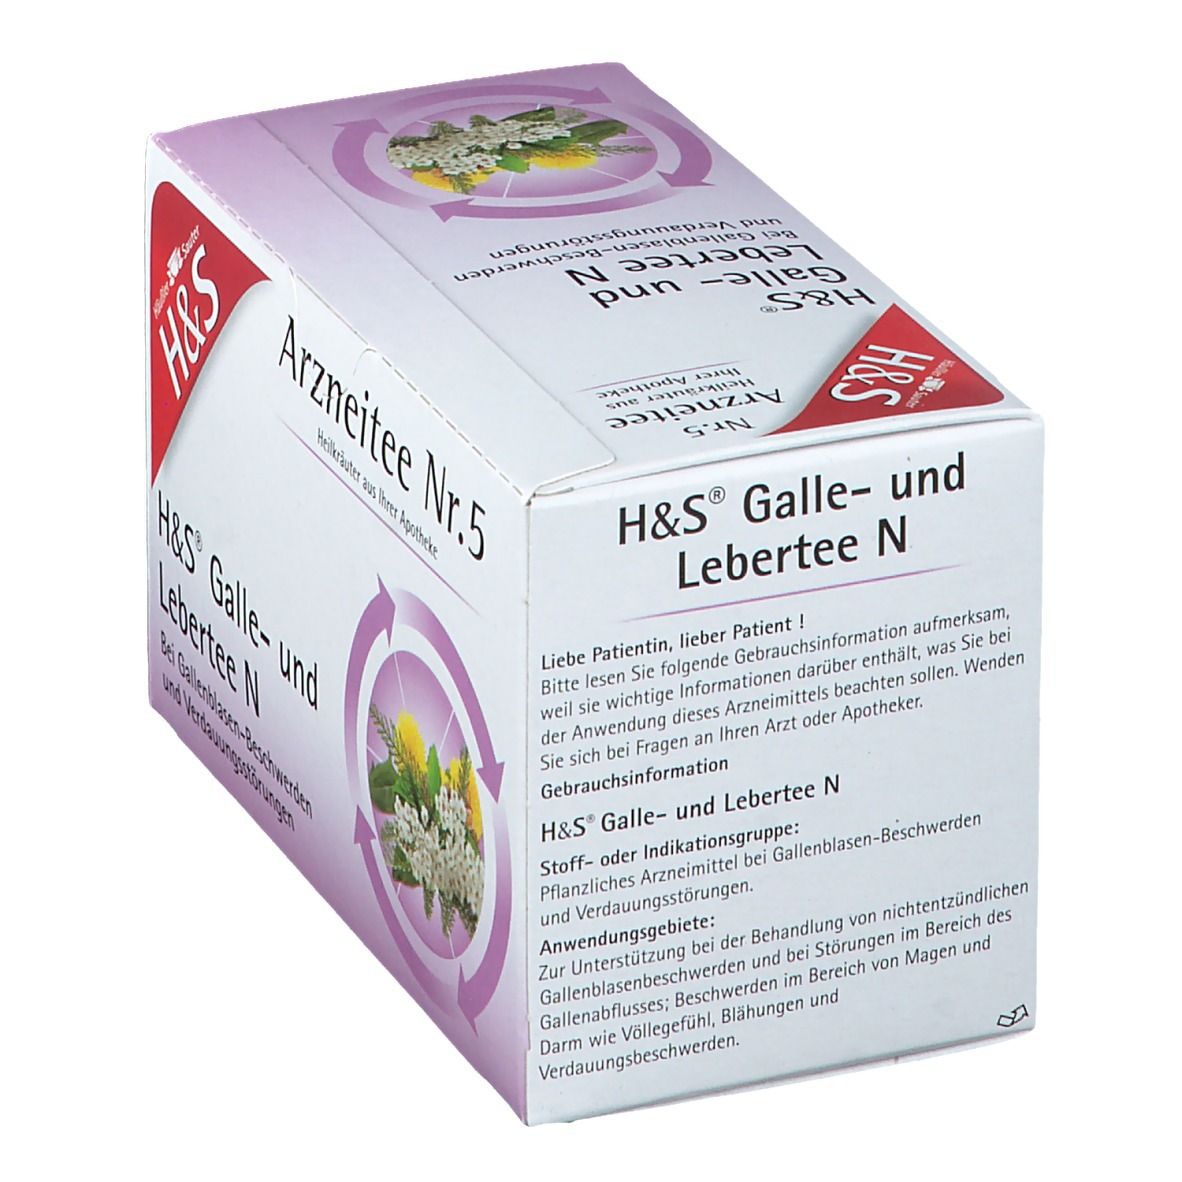 H&S Galle- und Lebertee N Nr. 5